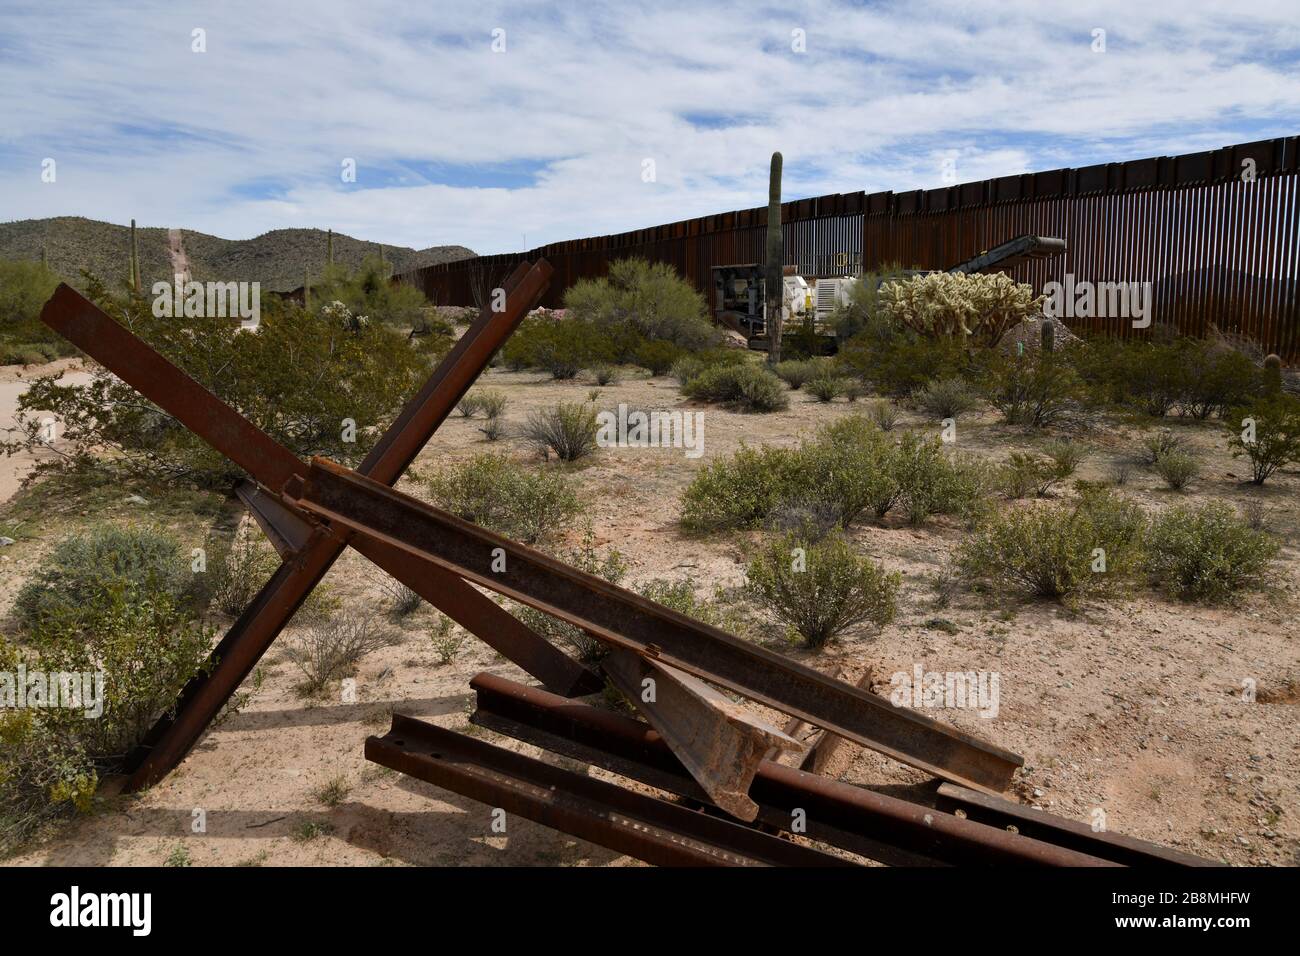 La construction d'un mur de bordure métallique dans le monument national de Cactus, dans le désert de Sonoran, à Luqueville, Arizona, aux États-Unis, sépare les États-Unis de Sonoyta Banque D'Images